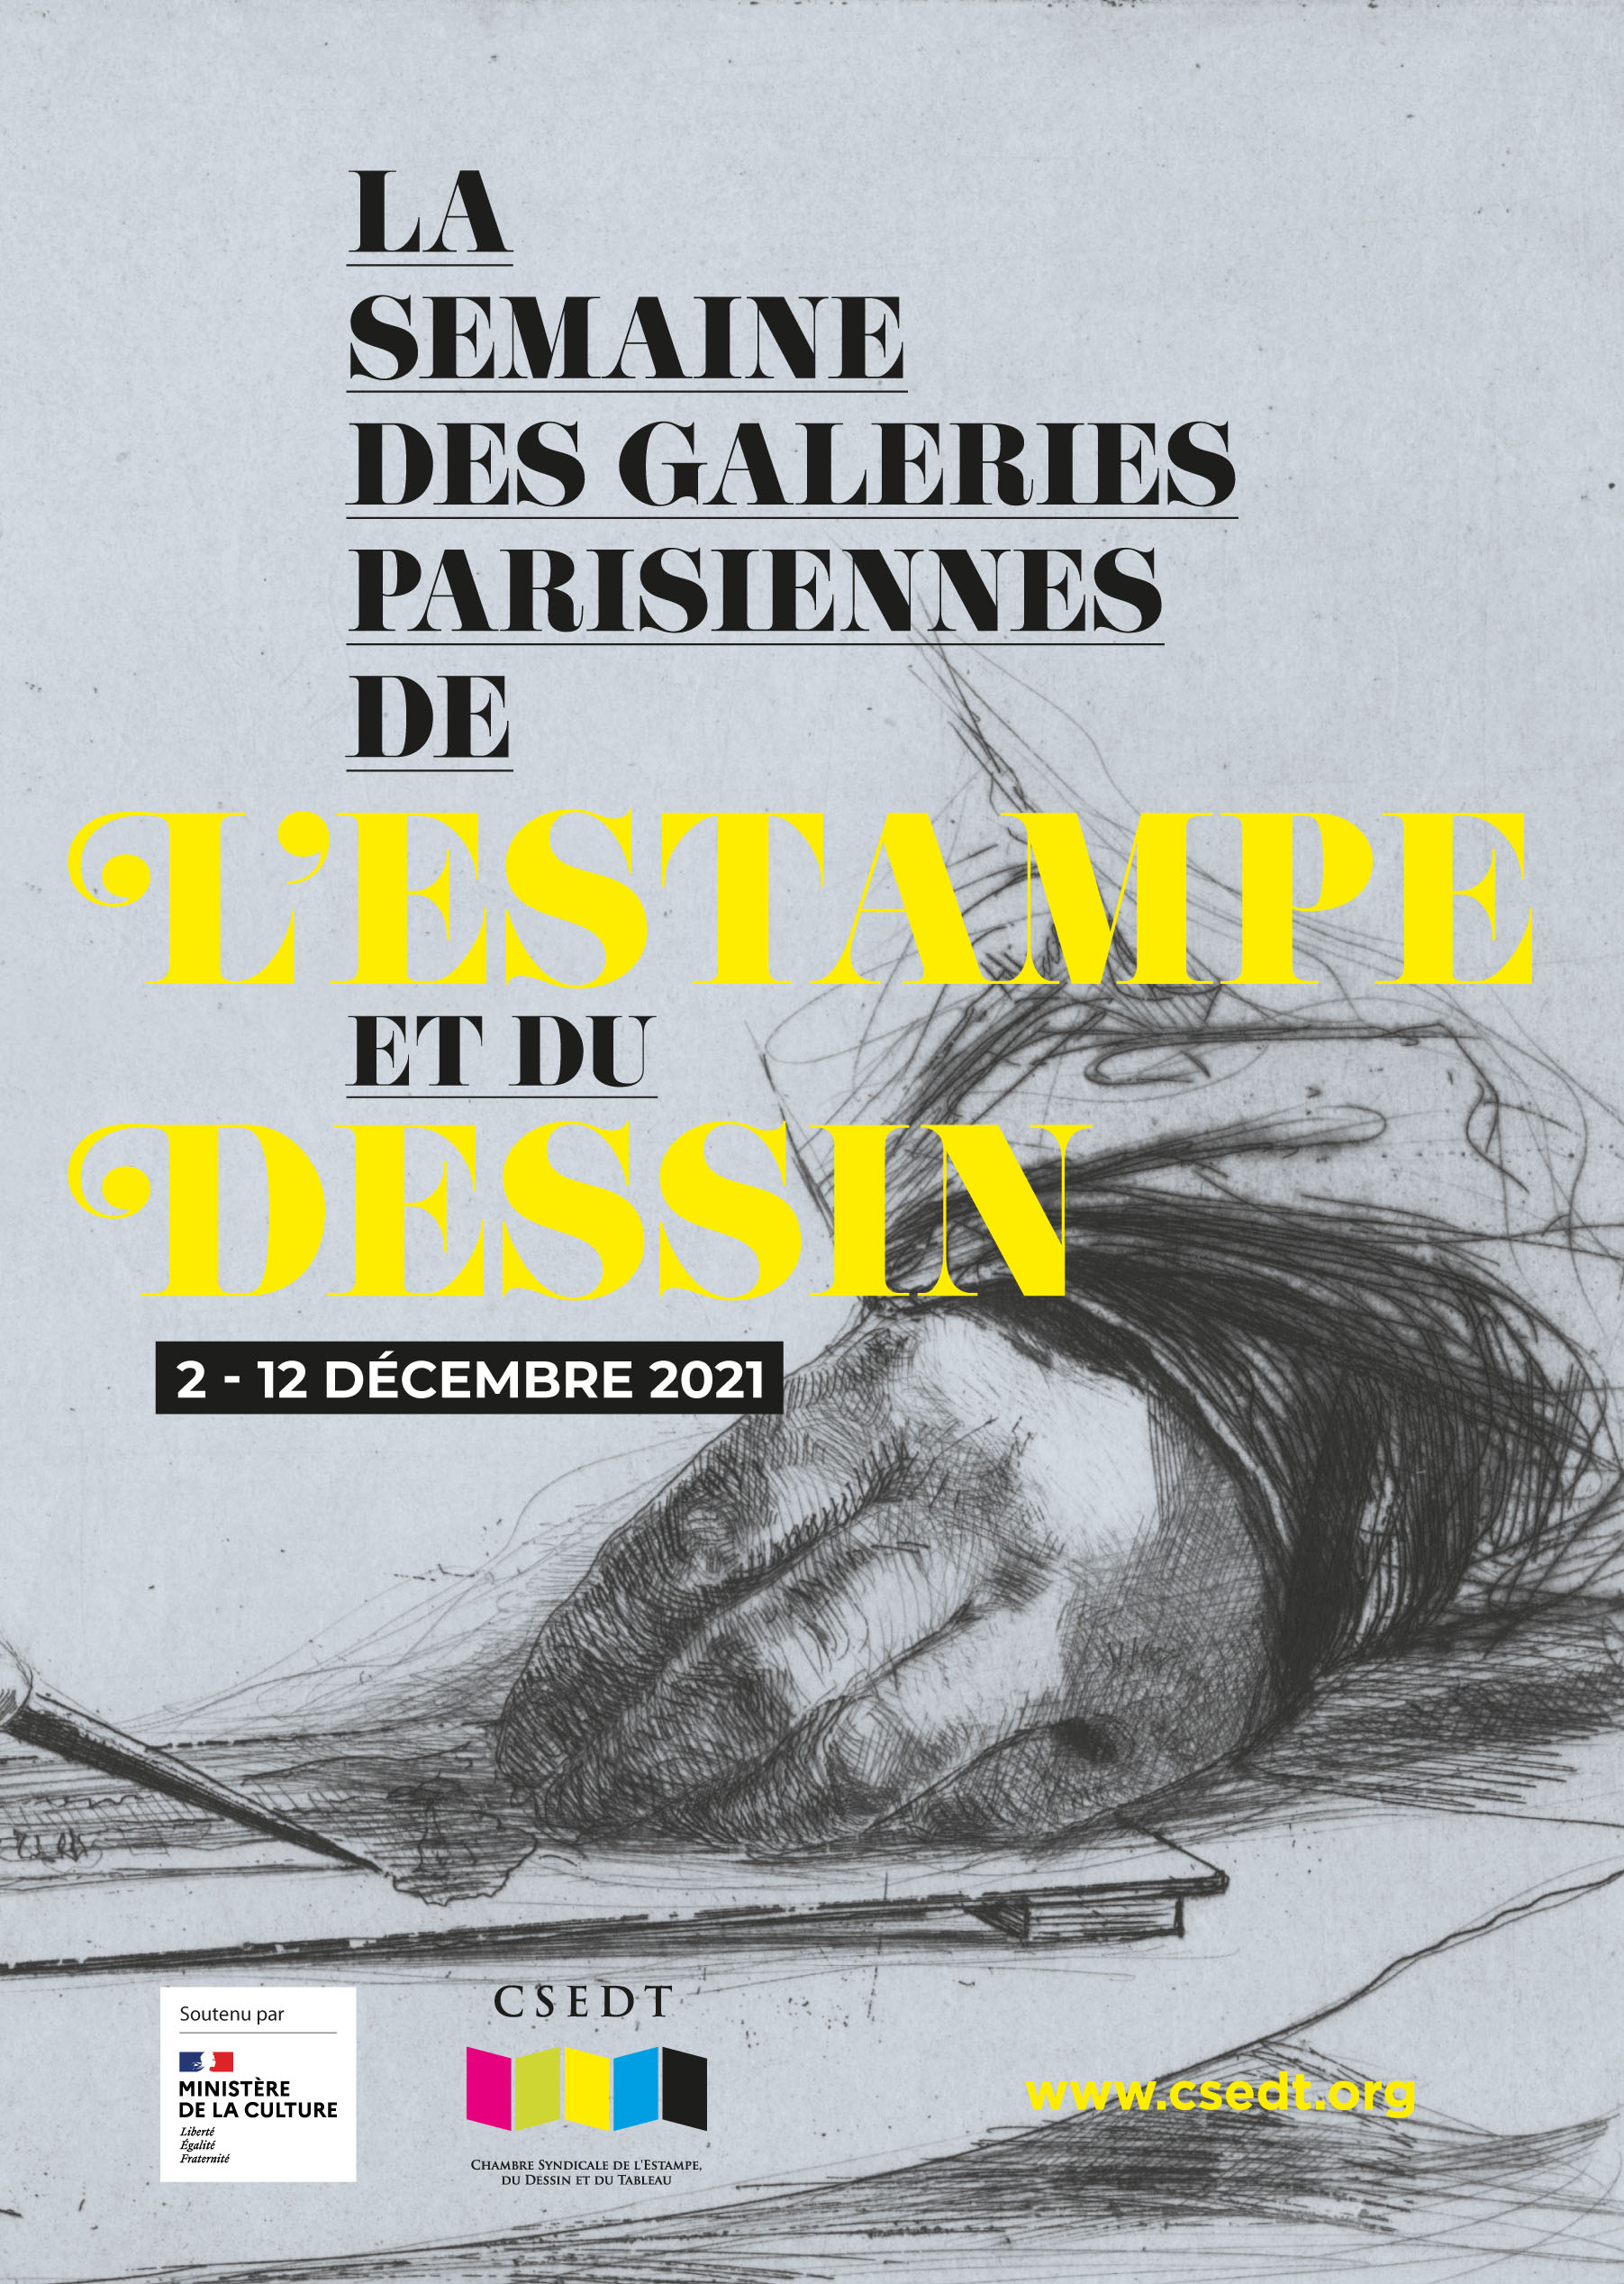 La semaine des galeries parisiennes de l'estampe et du dessin